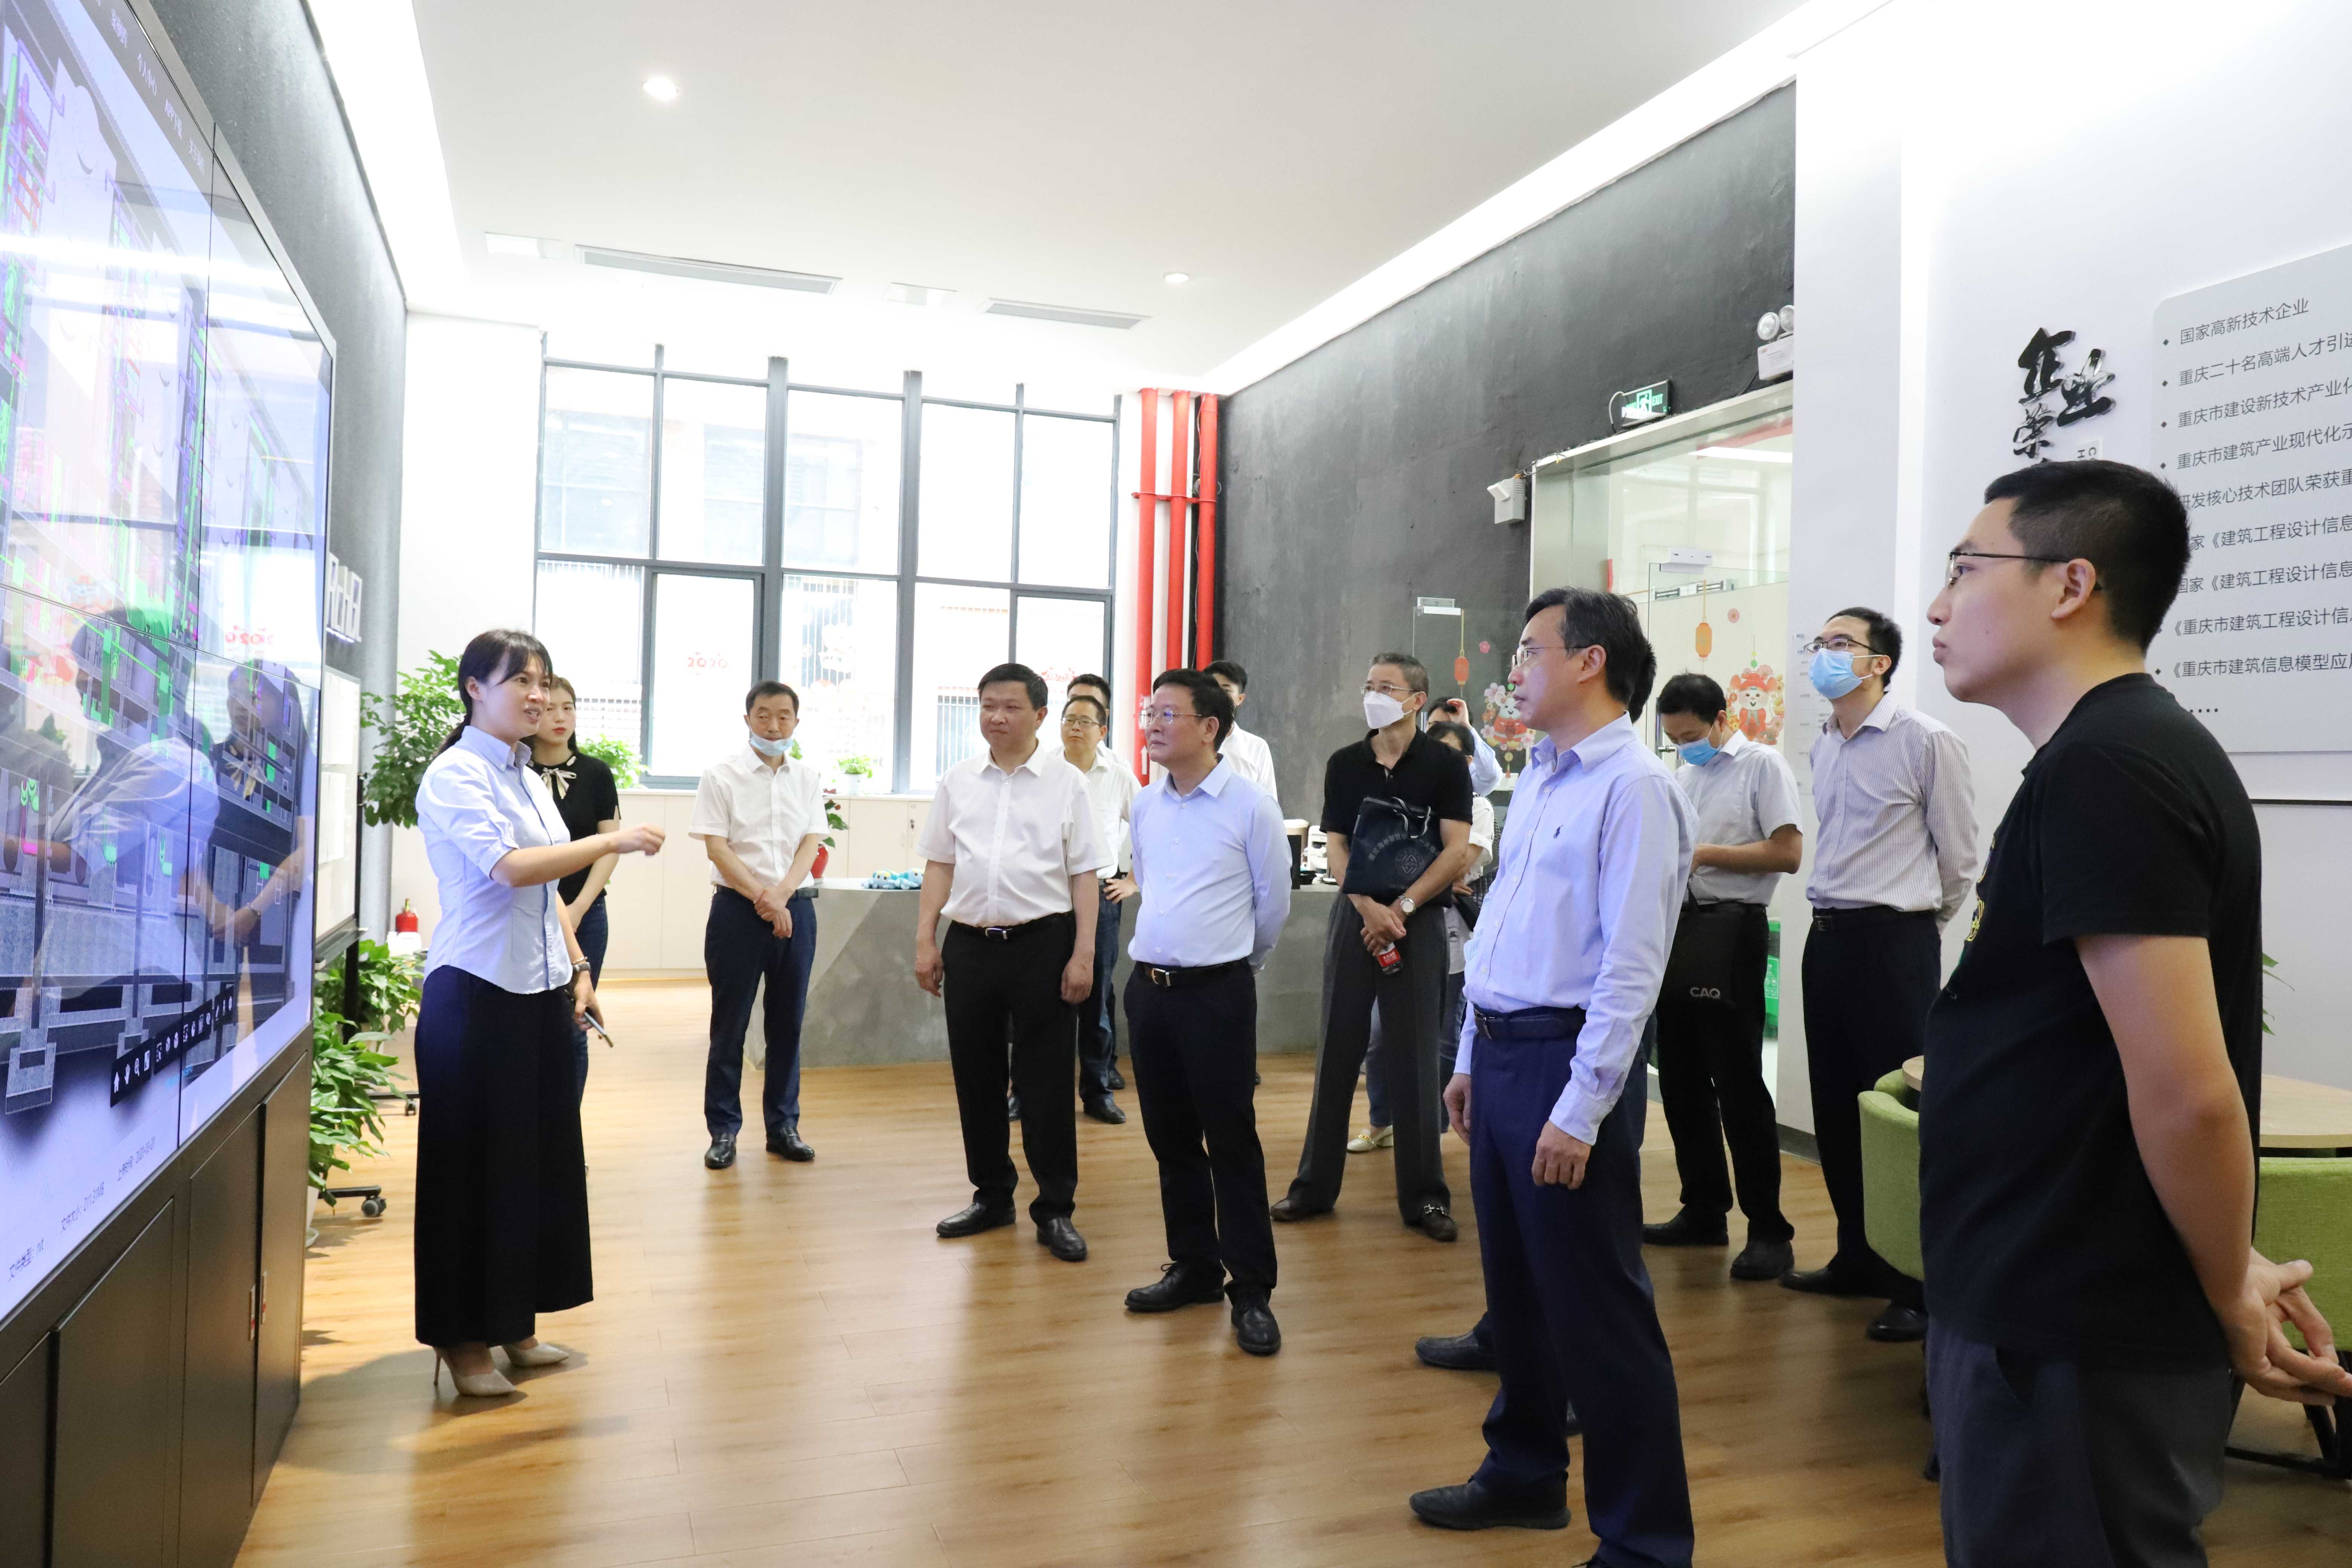       重庆市科学技术局局长许洪斌、沙区区长常斌莅临公司指导